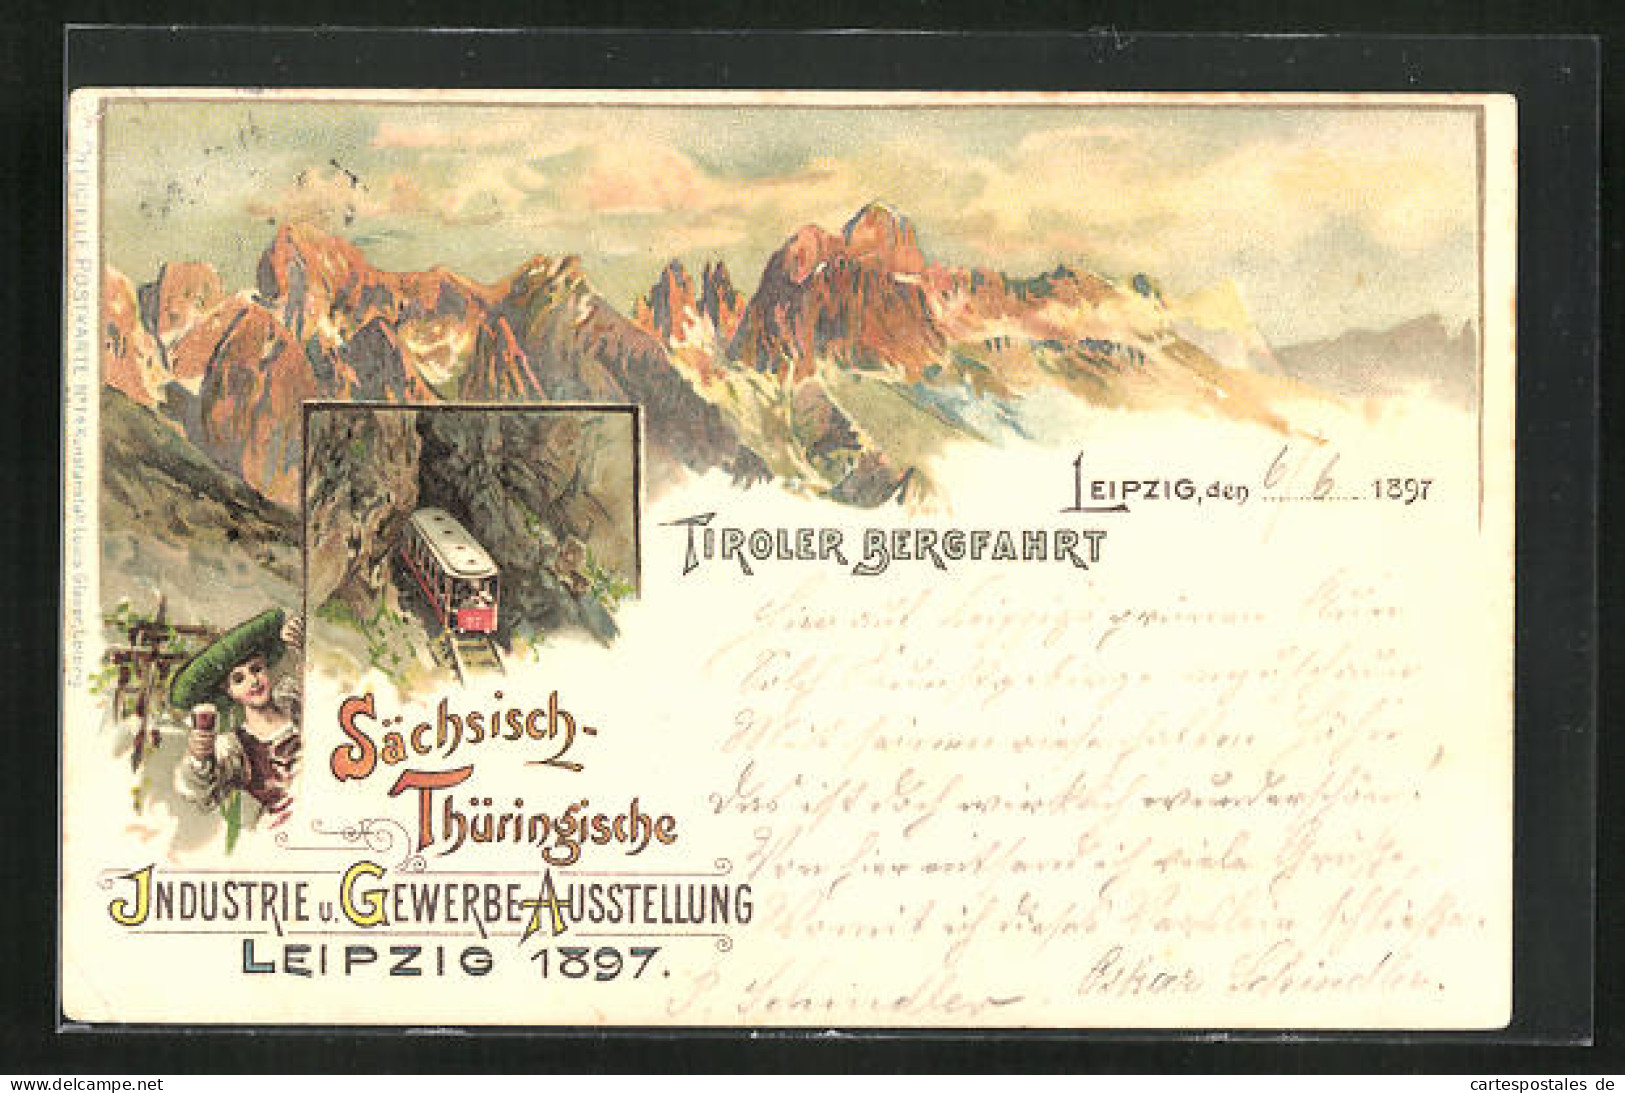 Lithographie Leipzig, Sächsisch-Thüringische Industrie-u. Gewerbe-Ausstellung 1897, Tiroler Bergfahrt  - Exhibitions